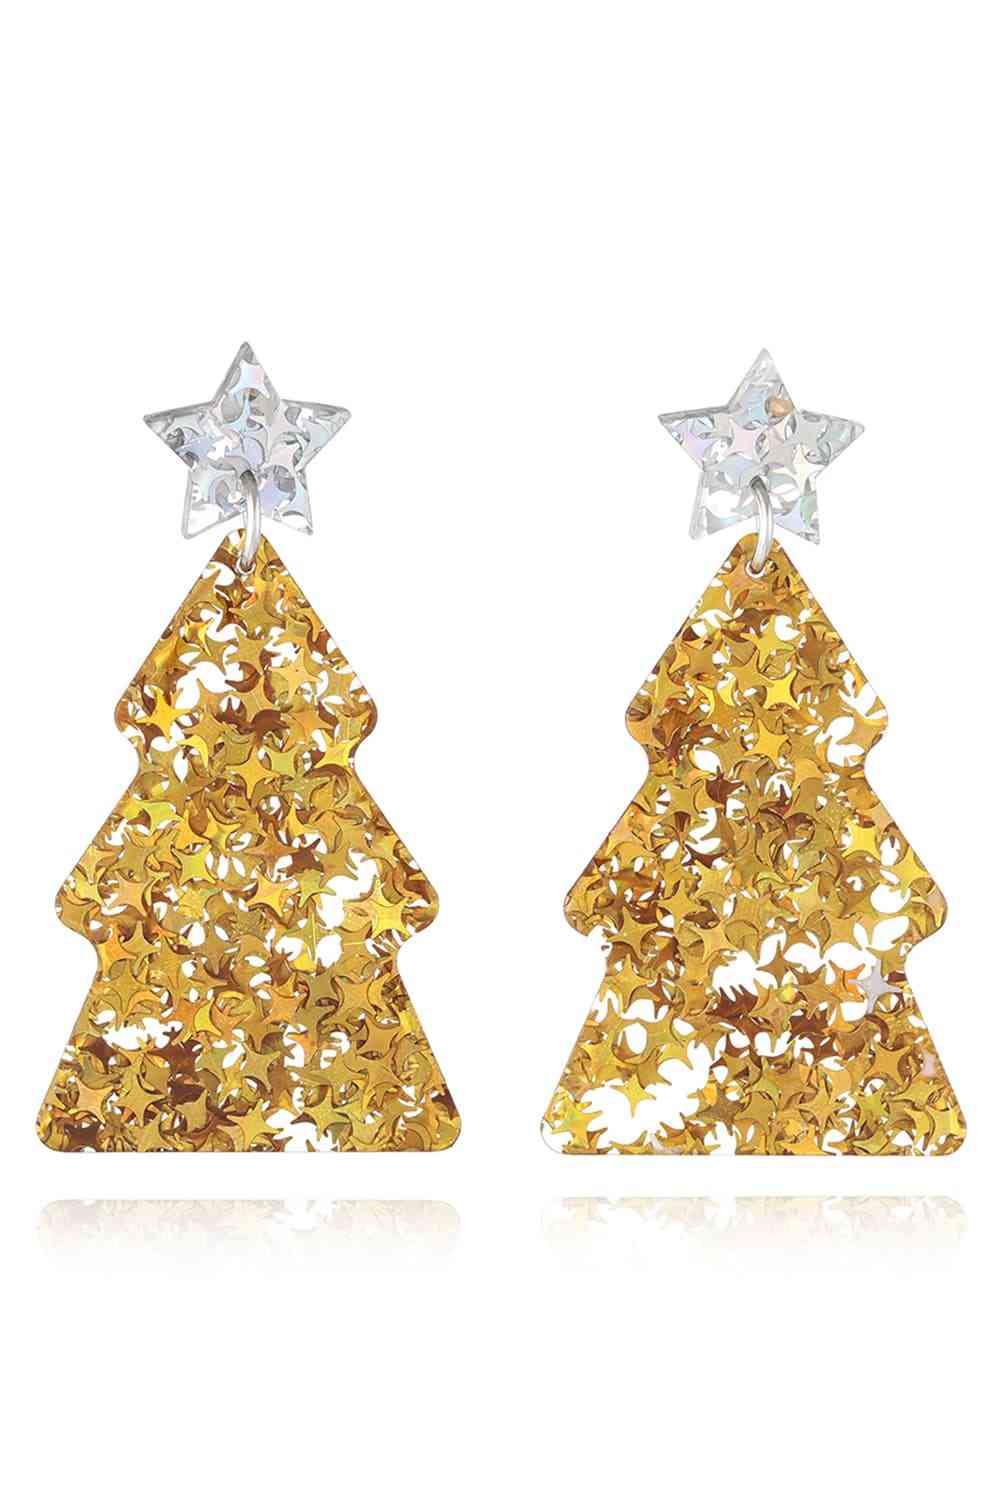 Christmas Tree Acrylic Earrings - Gold/Style A / One Size - Women’s Jewelry - Earrings - 18 - 2024